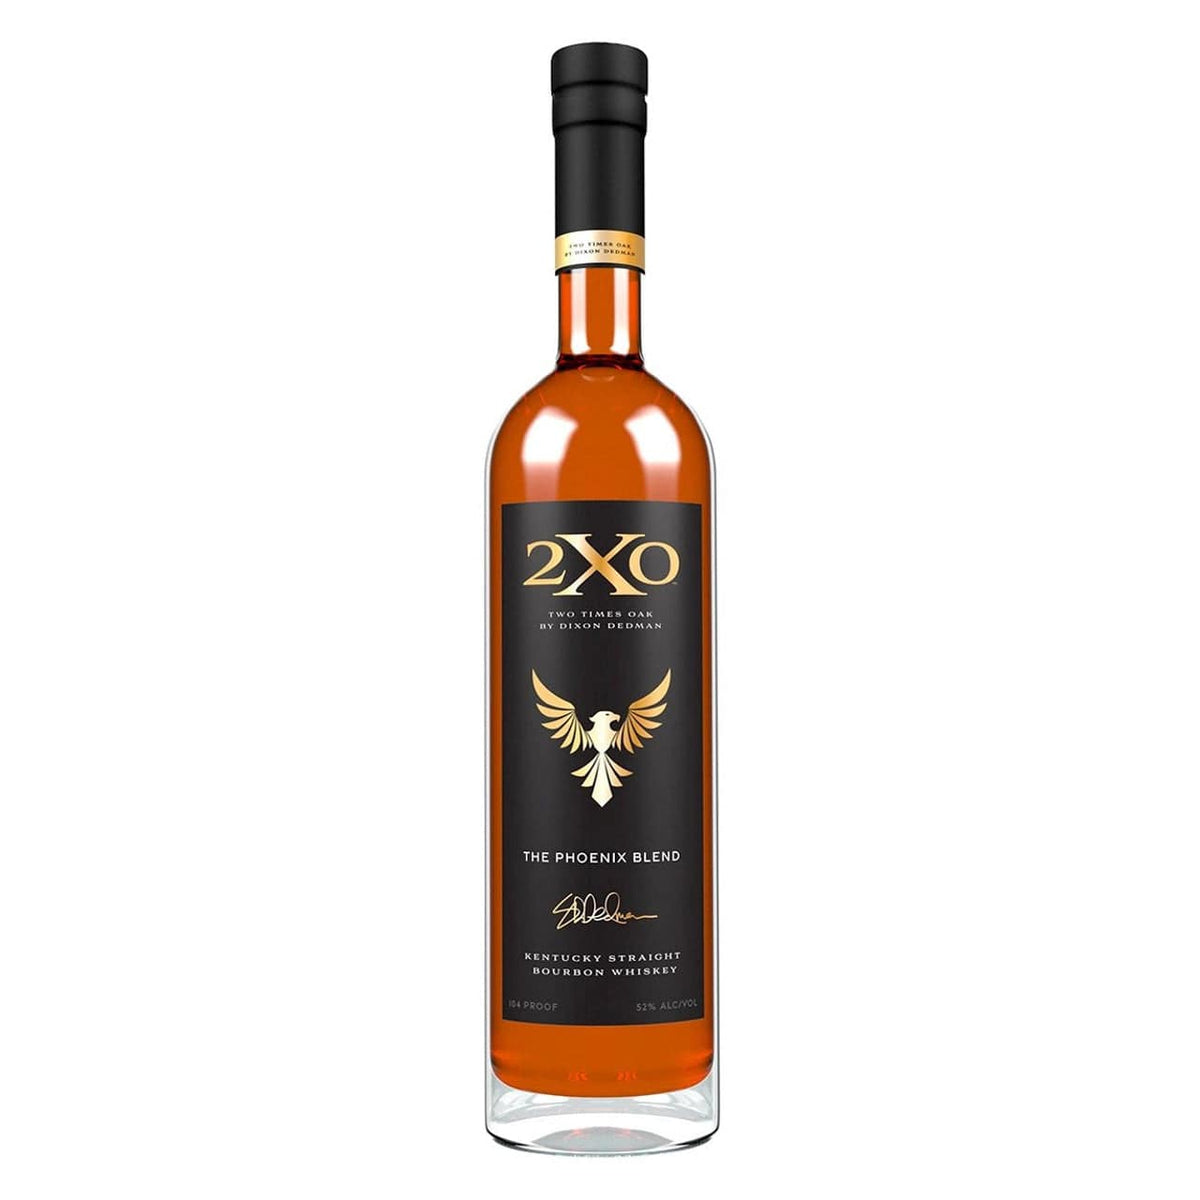 2XO Innkeeper's Blend Bourbon Whiskey - Barbank